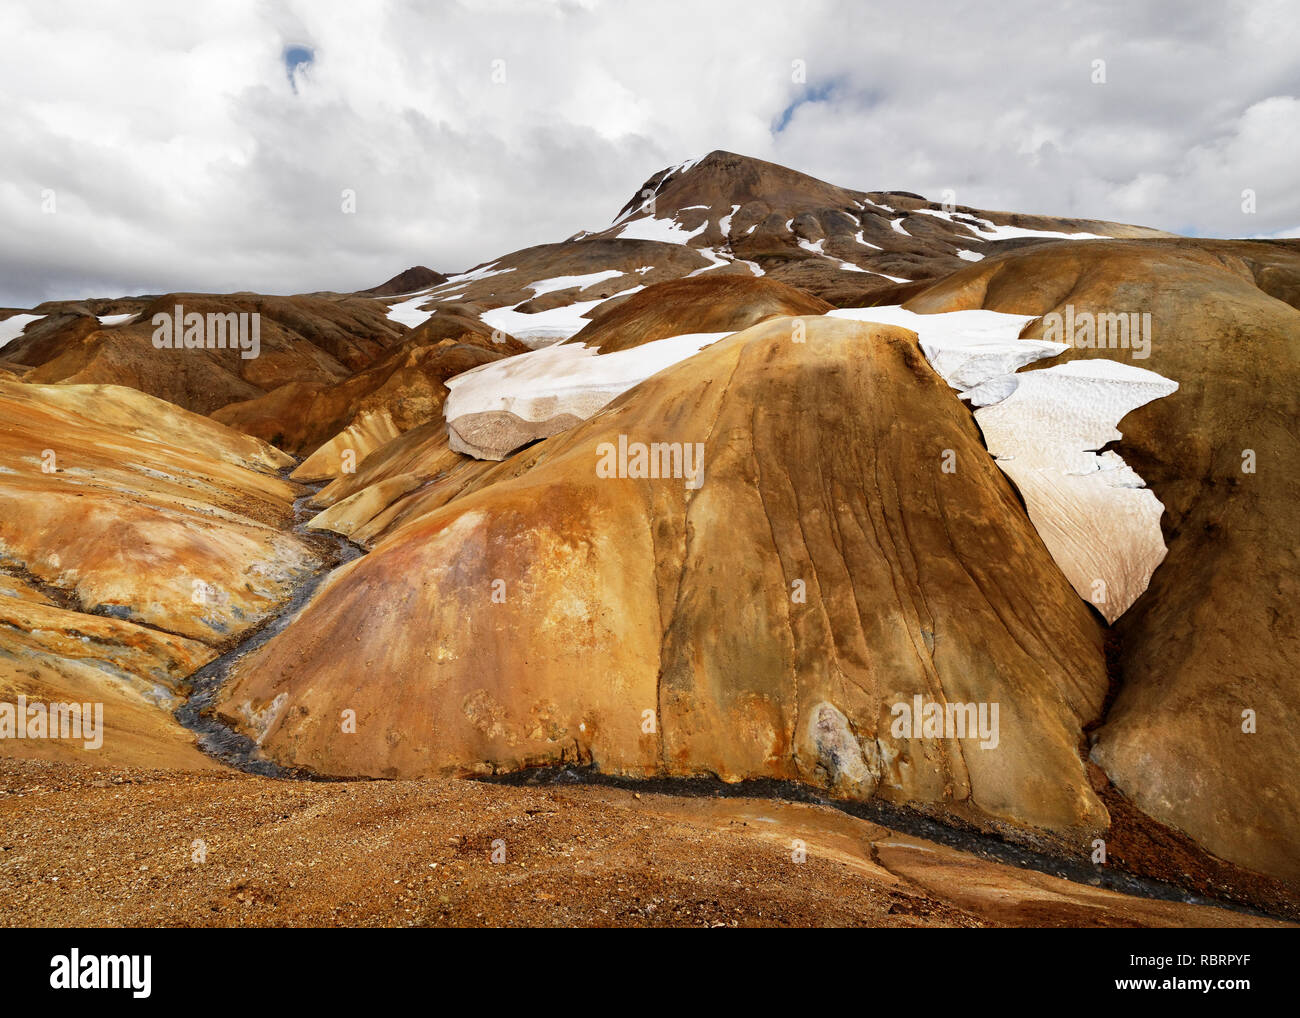 Paesaggio in ocra e toni di marrone con nevai e un piccolo fiume - Location: Islanda, Highlands, area "Kerlingarfjöll' Foto Stock